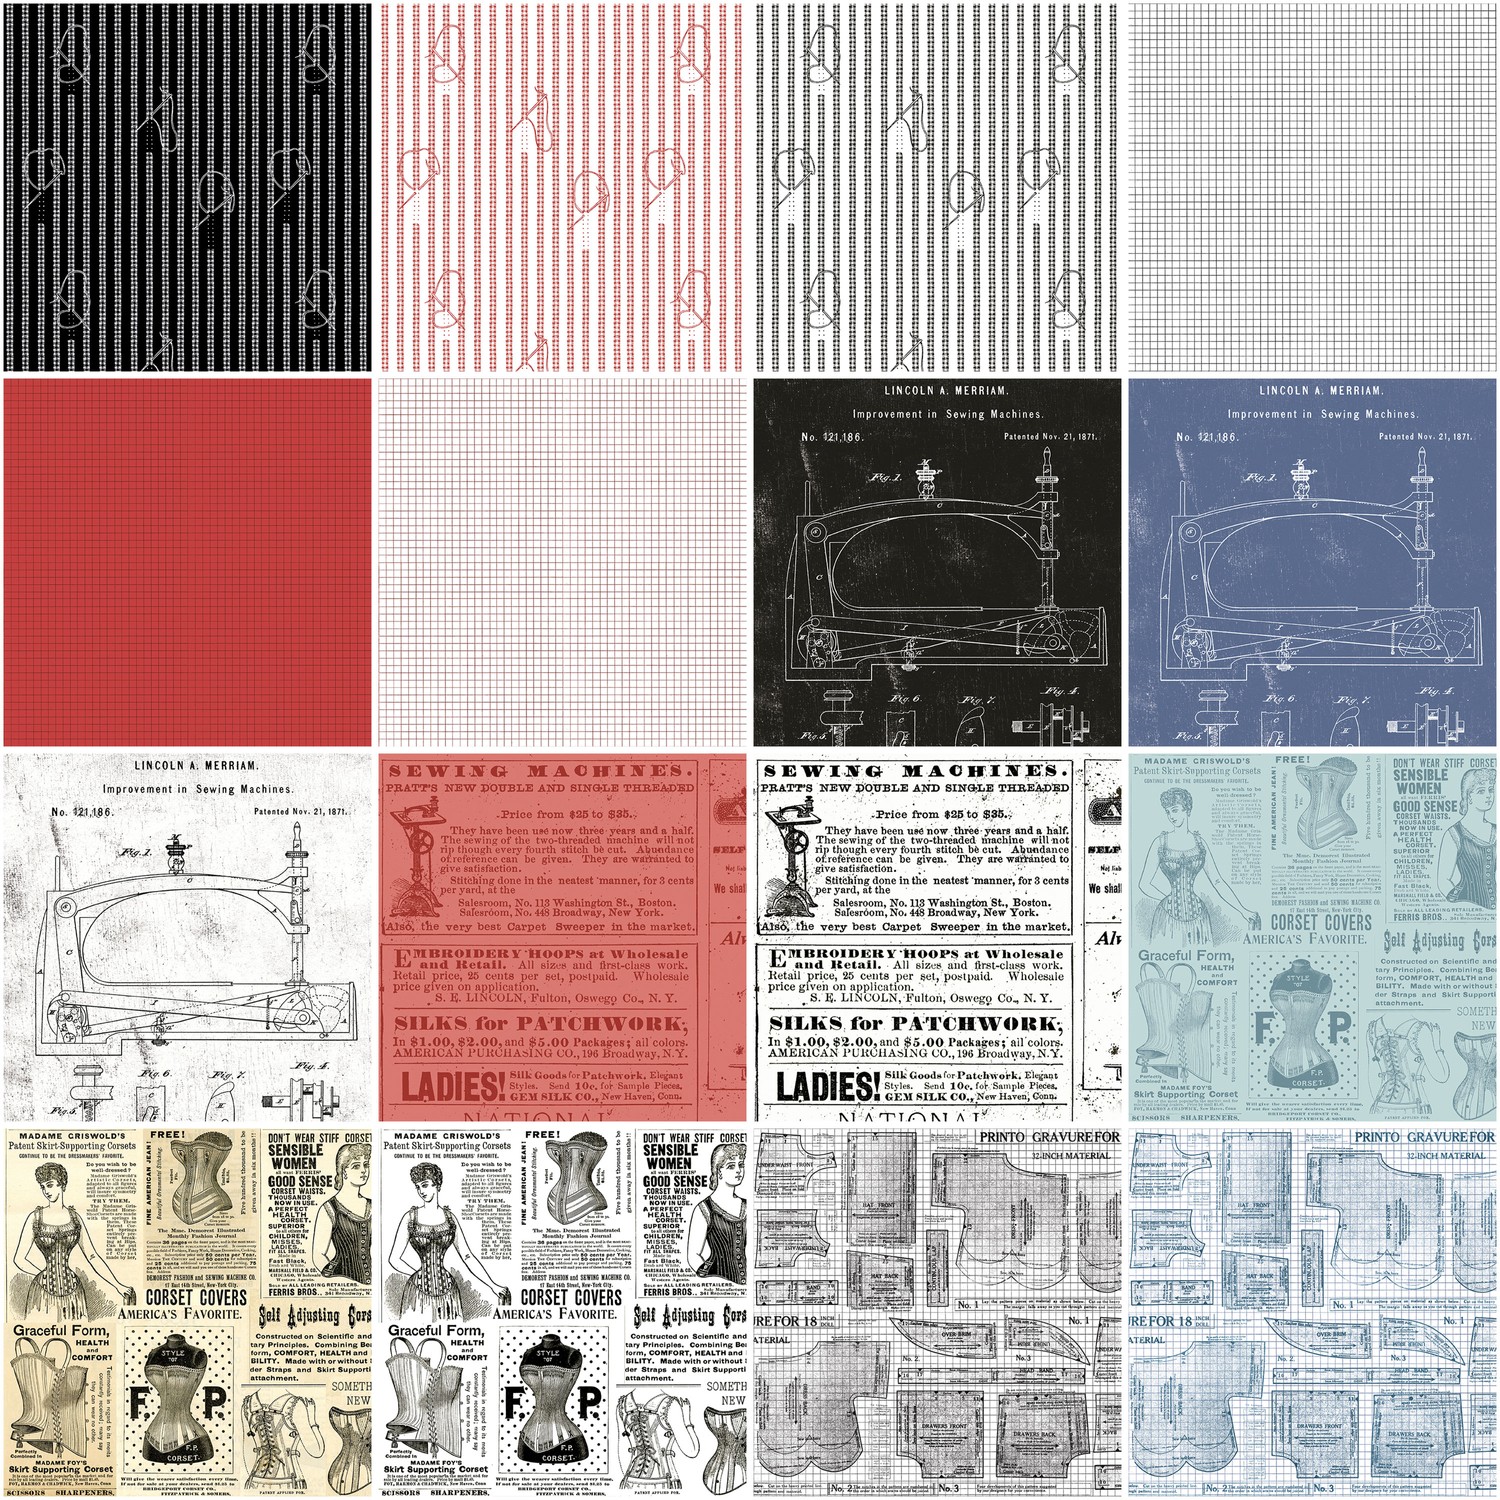 Riley Blake Designs Sew Journal Fat Quarter Bundle by J. Wecker Frisch  FQ-13880-36